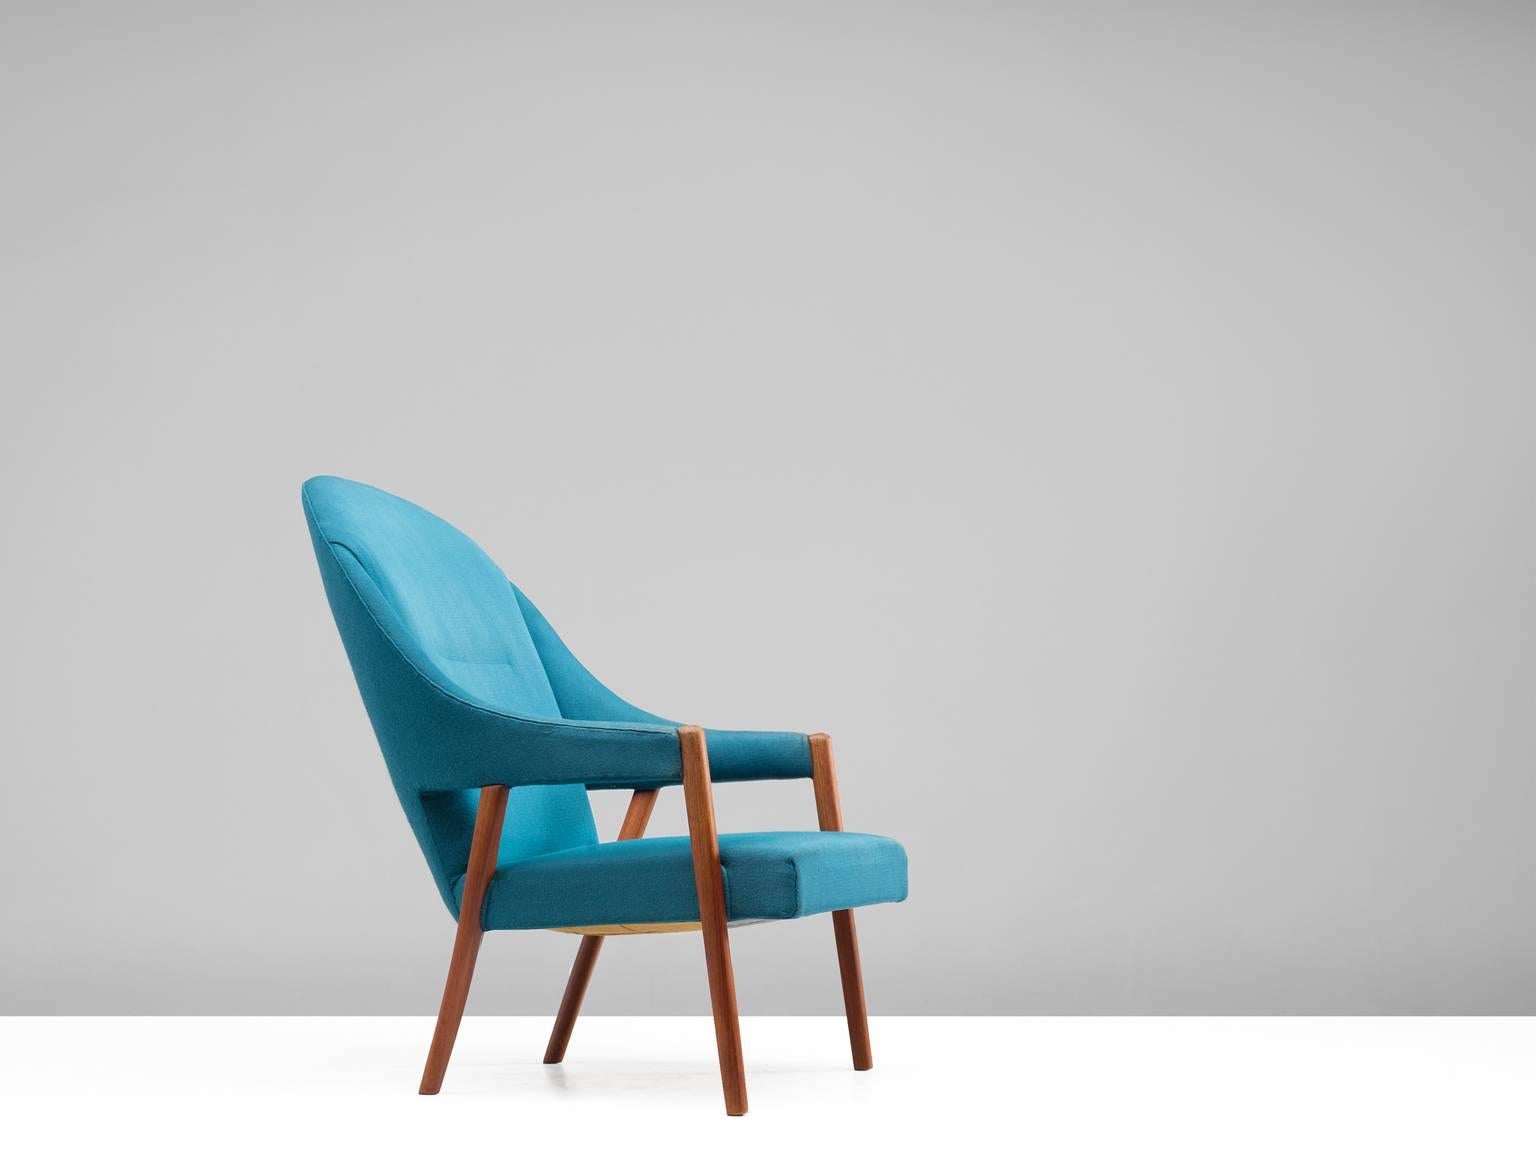 Fauteuil, tapisserie bleue, teck, Danemark, années 1950. 

Cette chaise longue sculpturale est recouverte d'un tissu bleu vif. Cette chaise imposante, qui date des années 1950, est un exemple aéré et sculptural du design danois moderne,